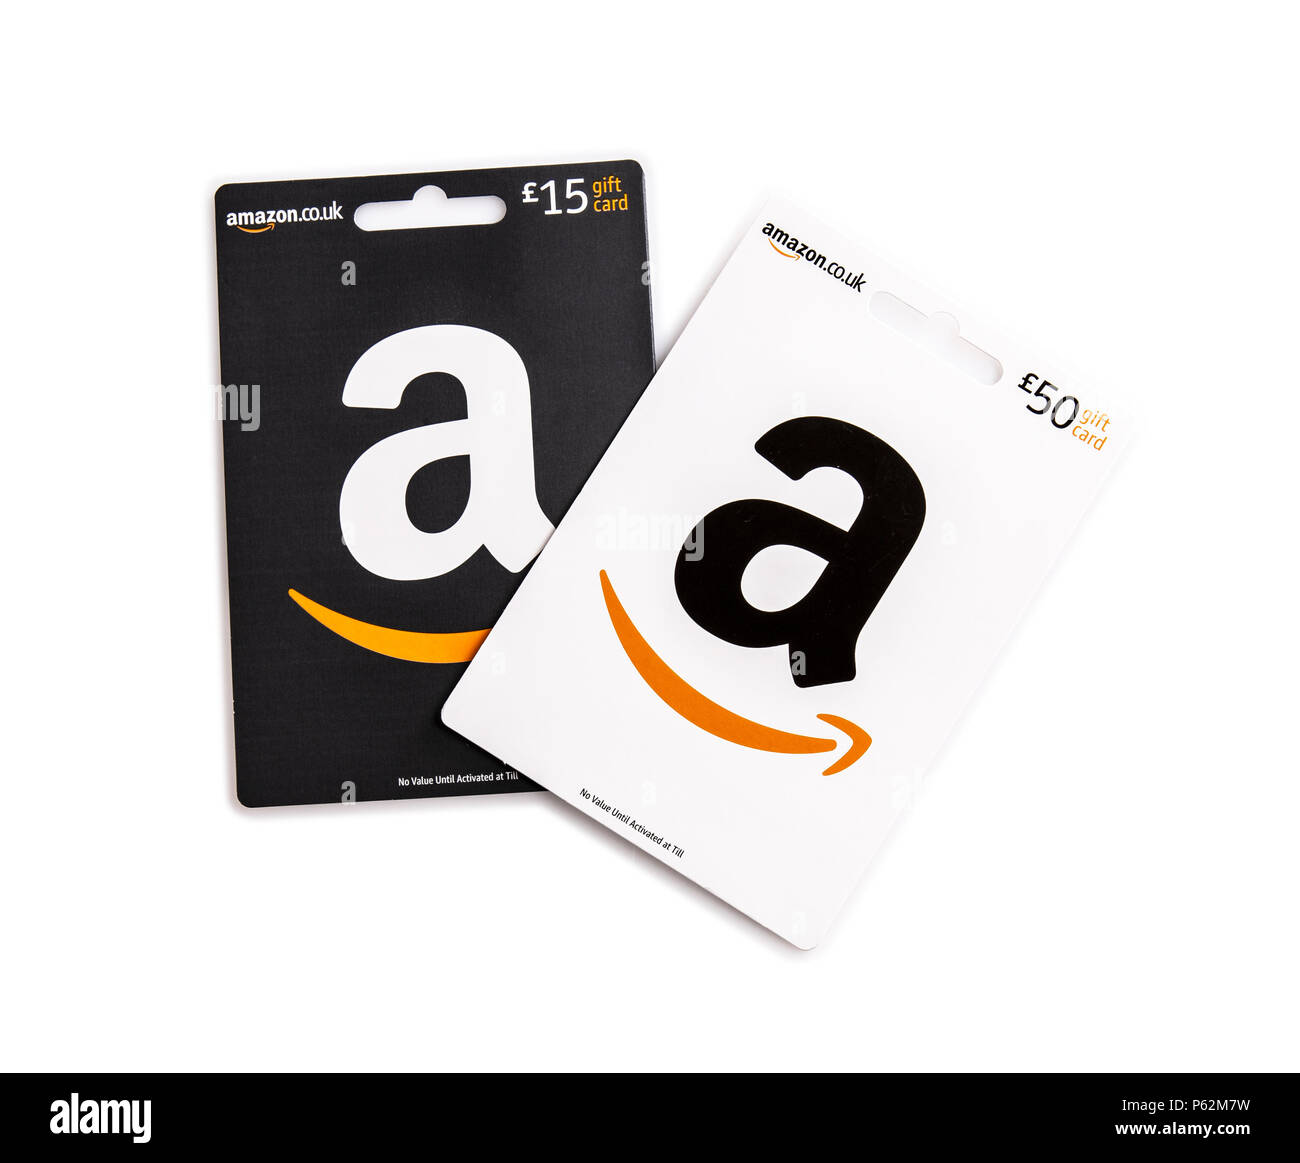 Amazon gift cards immagini e fotografie stock ad alta risoluzione - Alamy